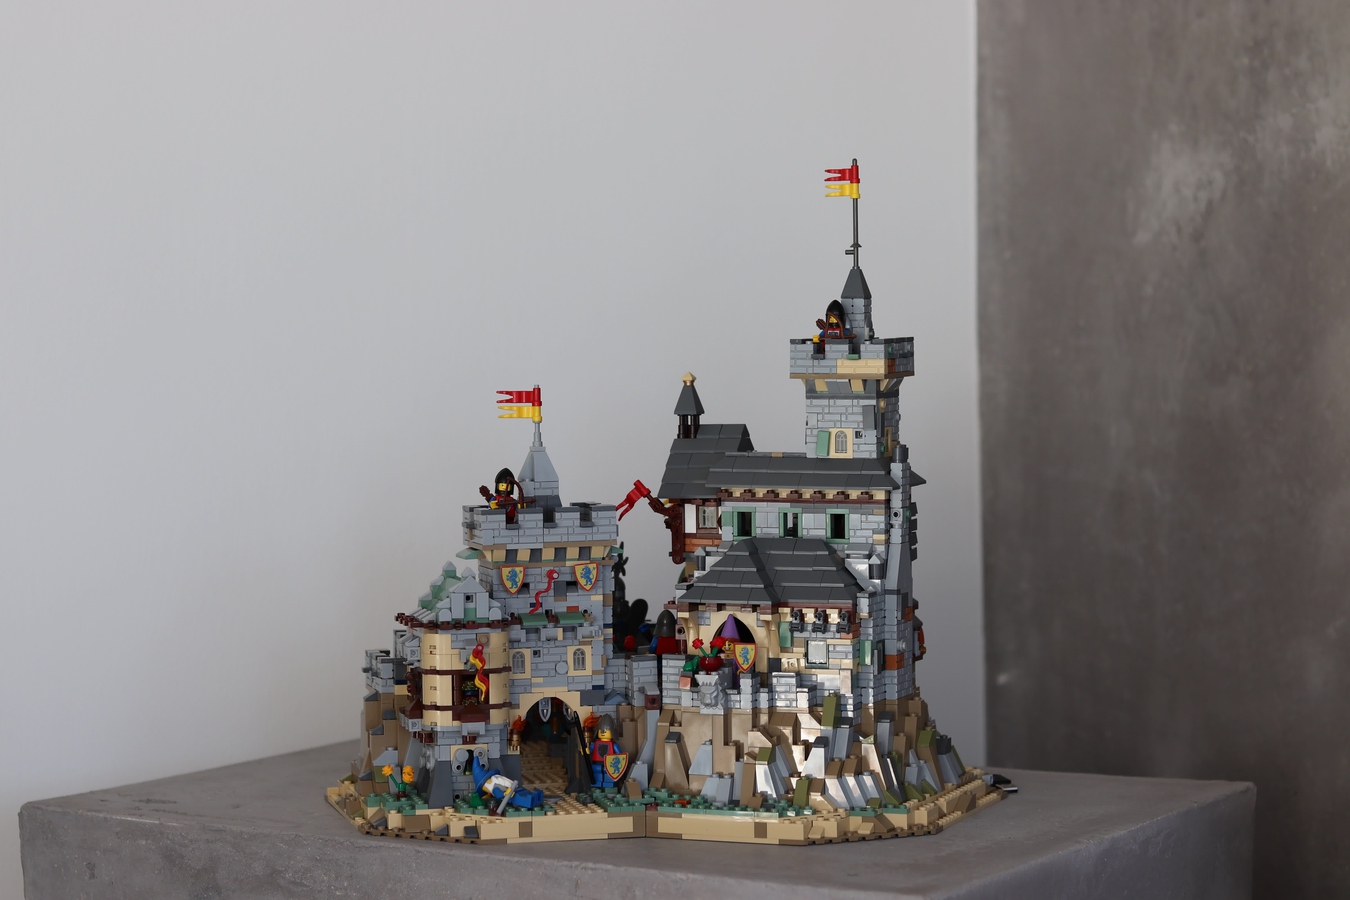 LEGO Burg mit vielen Details